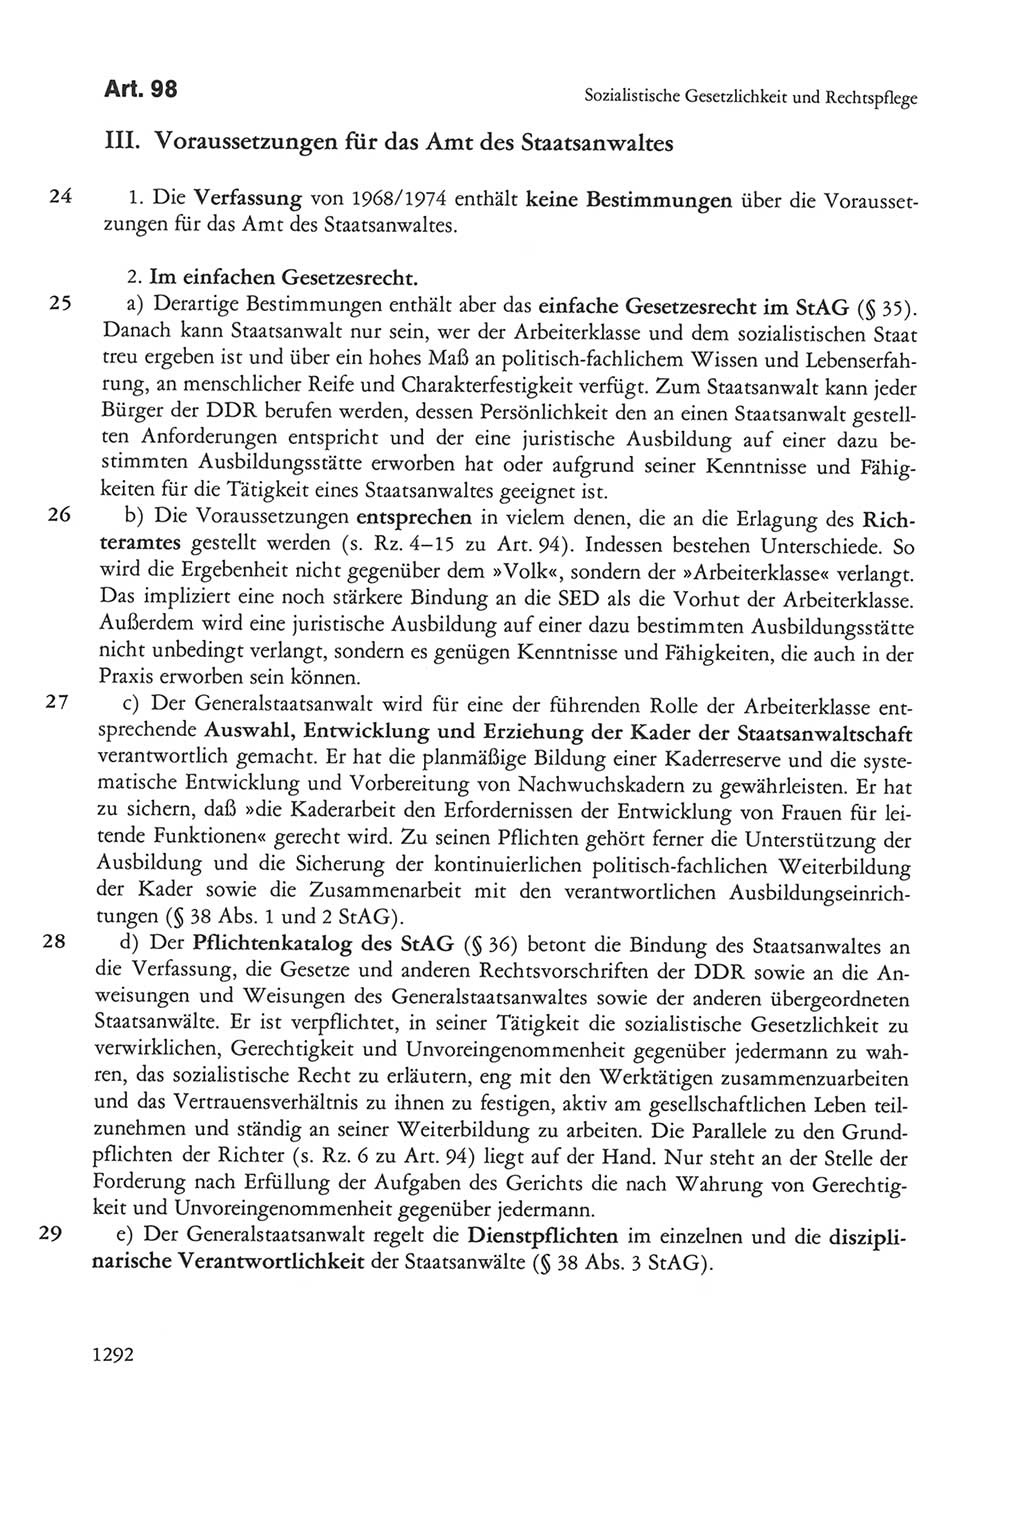 Die sozialistische Verfassung der Deutschen Demokratischen Republik (DDR), Kommentar mit einem Nachtrag 1997, Seite 1292 (Soz. Verf. DDR Komm. Nachtr. 1997, S. 1292)